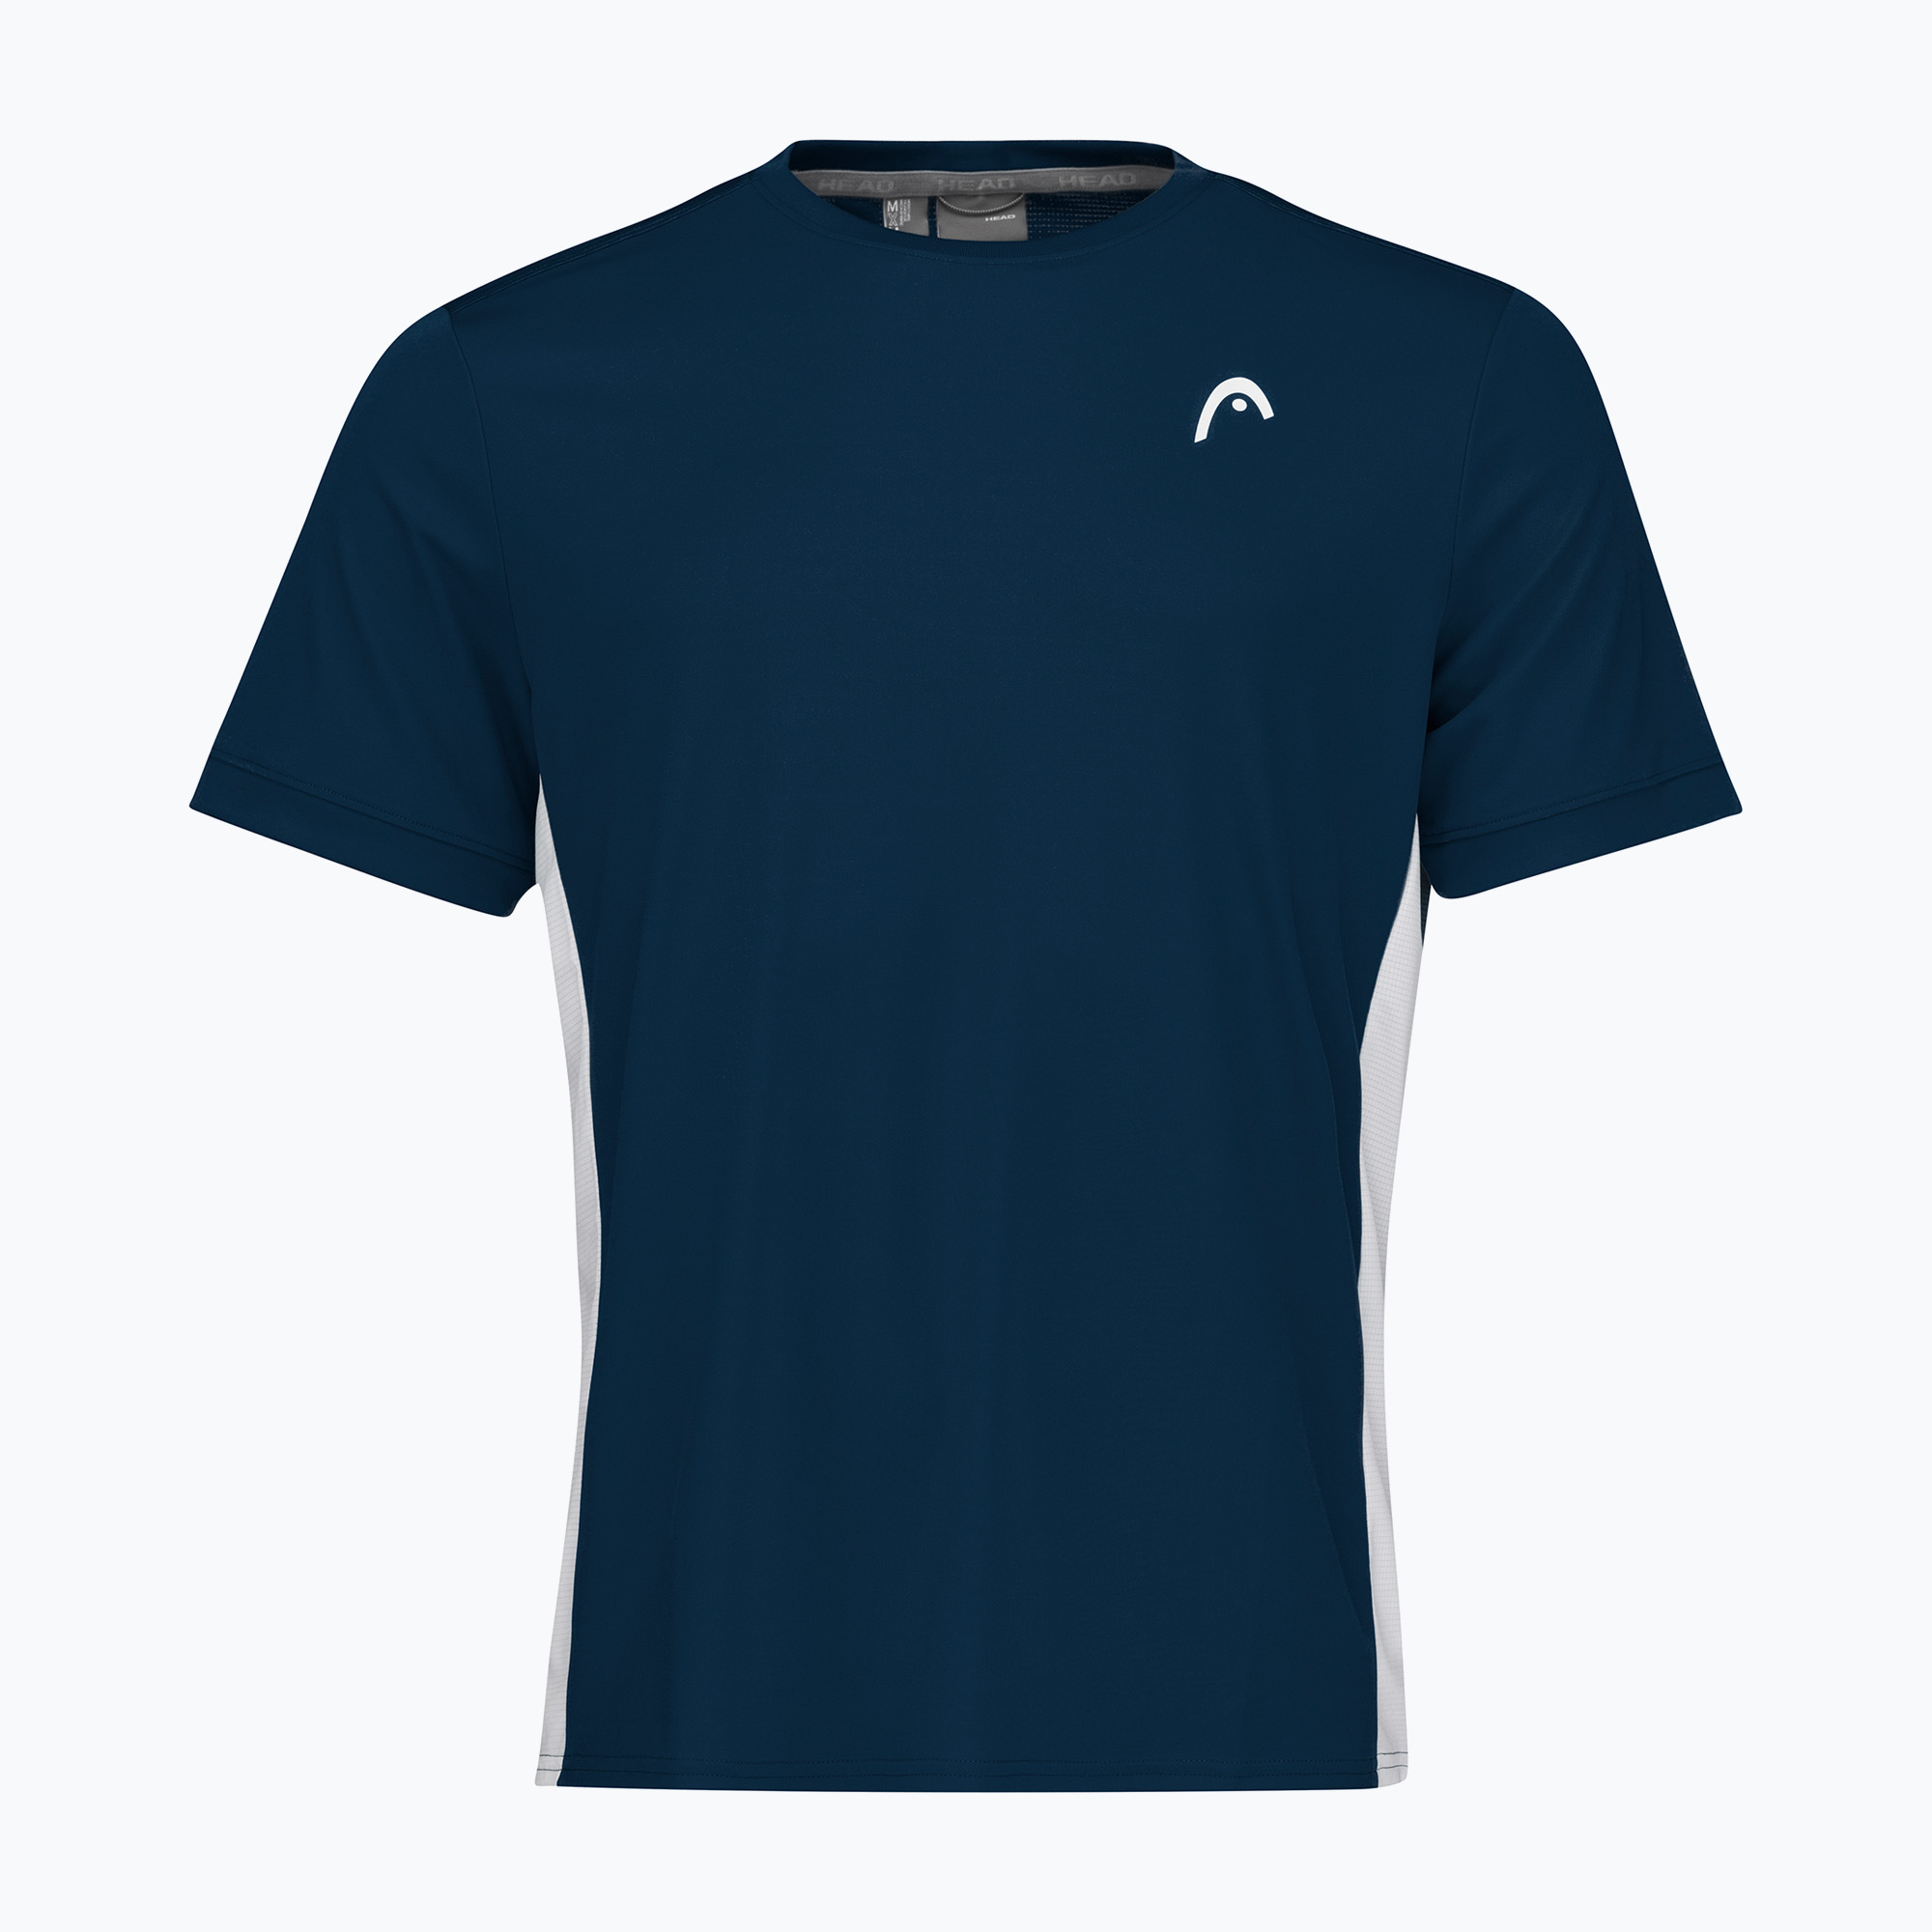 Pánske tenisové tričko HEAD Slice navy blue 811412